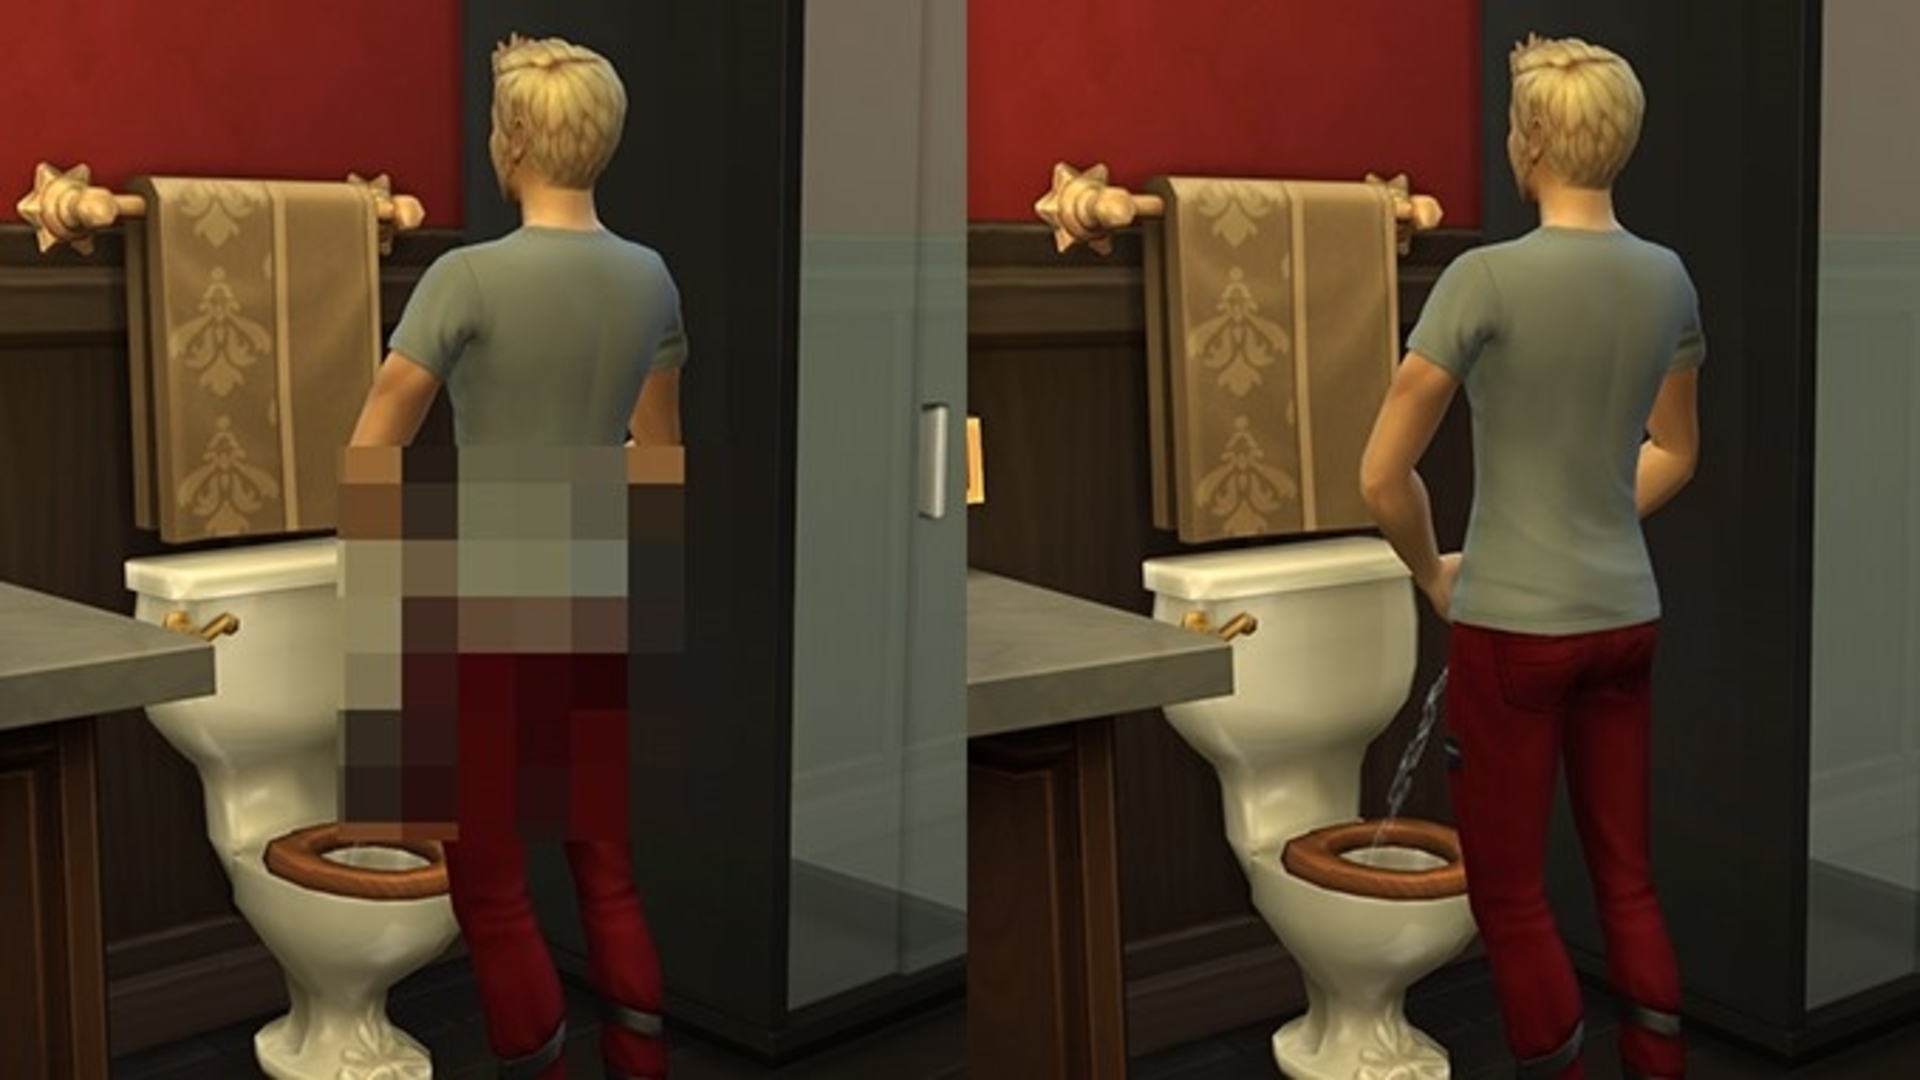 Une image fractionnée montrant le même homme en train de faire pipi dans les toilettes, dont un non censuré, du mod sexuel Sims 4 Crystal Clear, No Censor